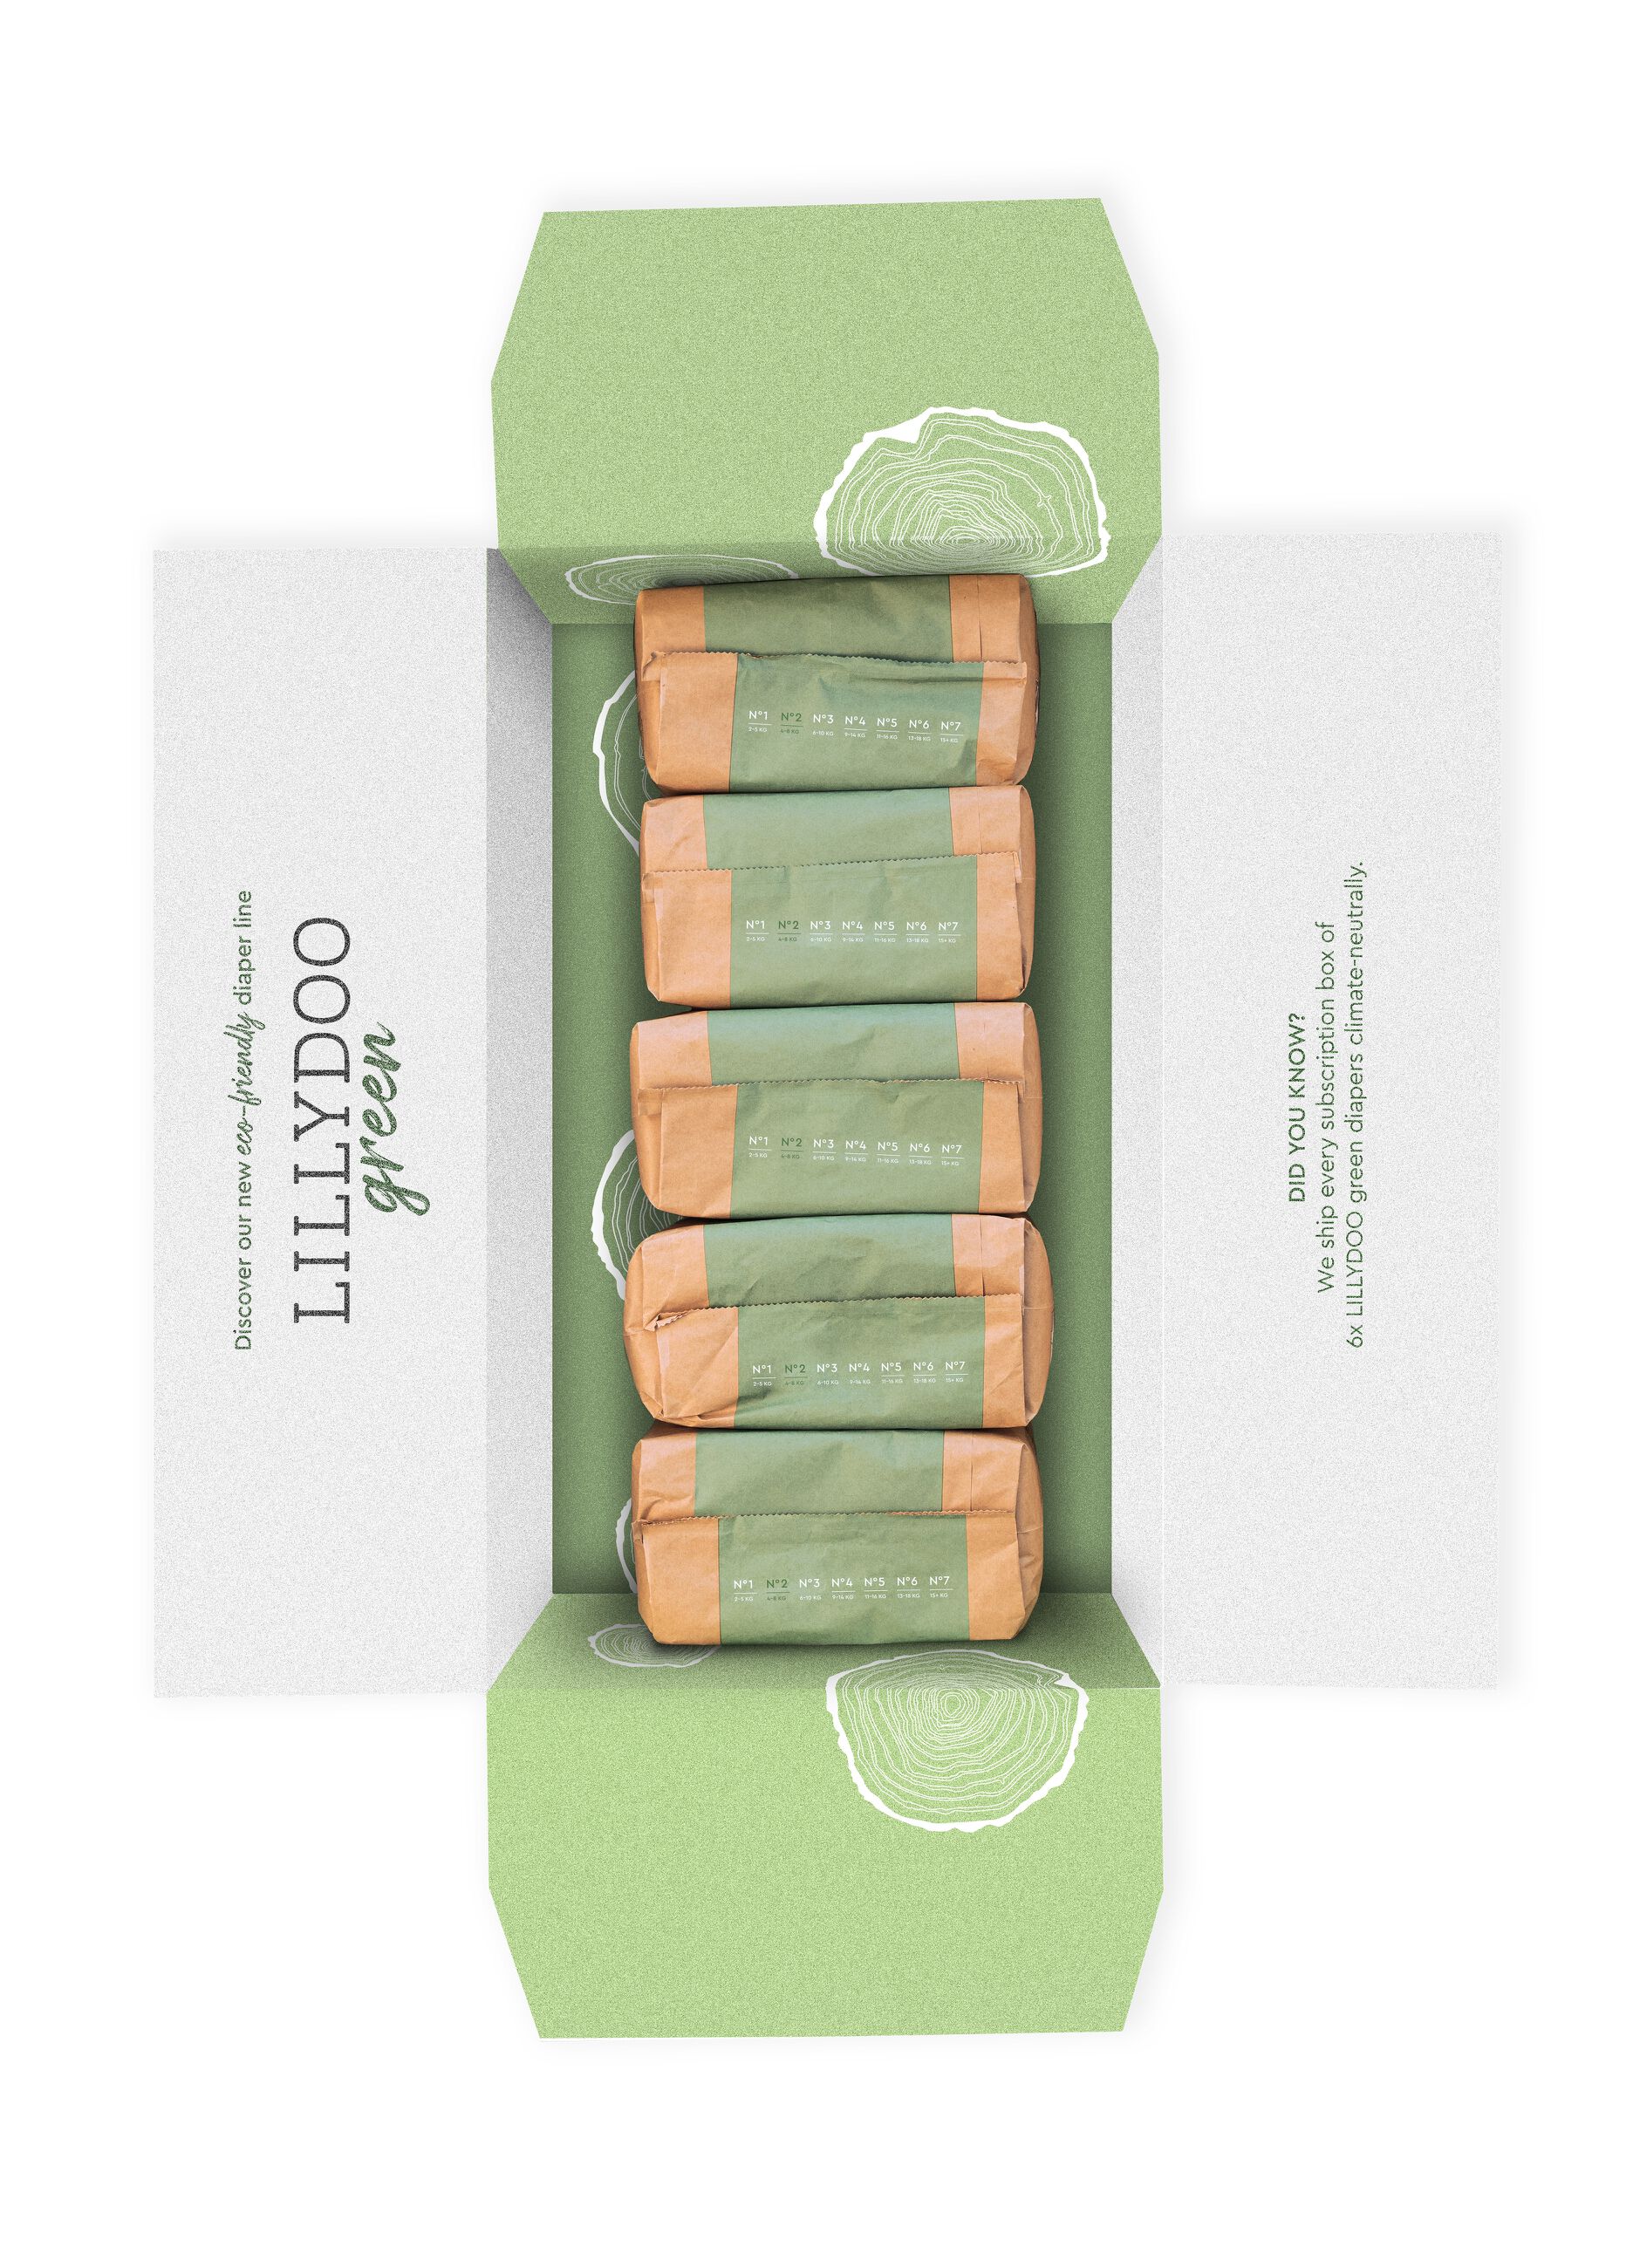 Pannolini multipack da 5 confezioni ecosostenibili N°2 (4-8Kg) Lillydoo